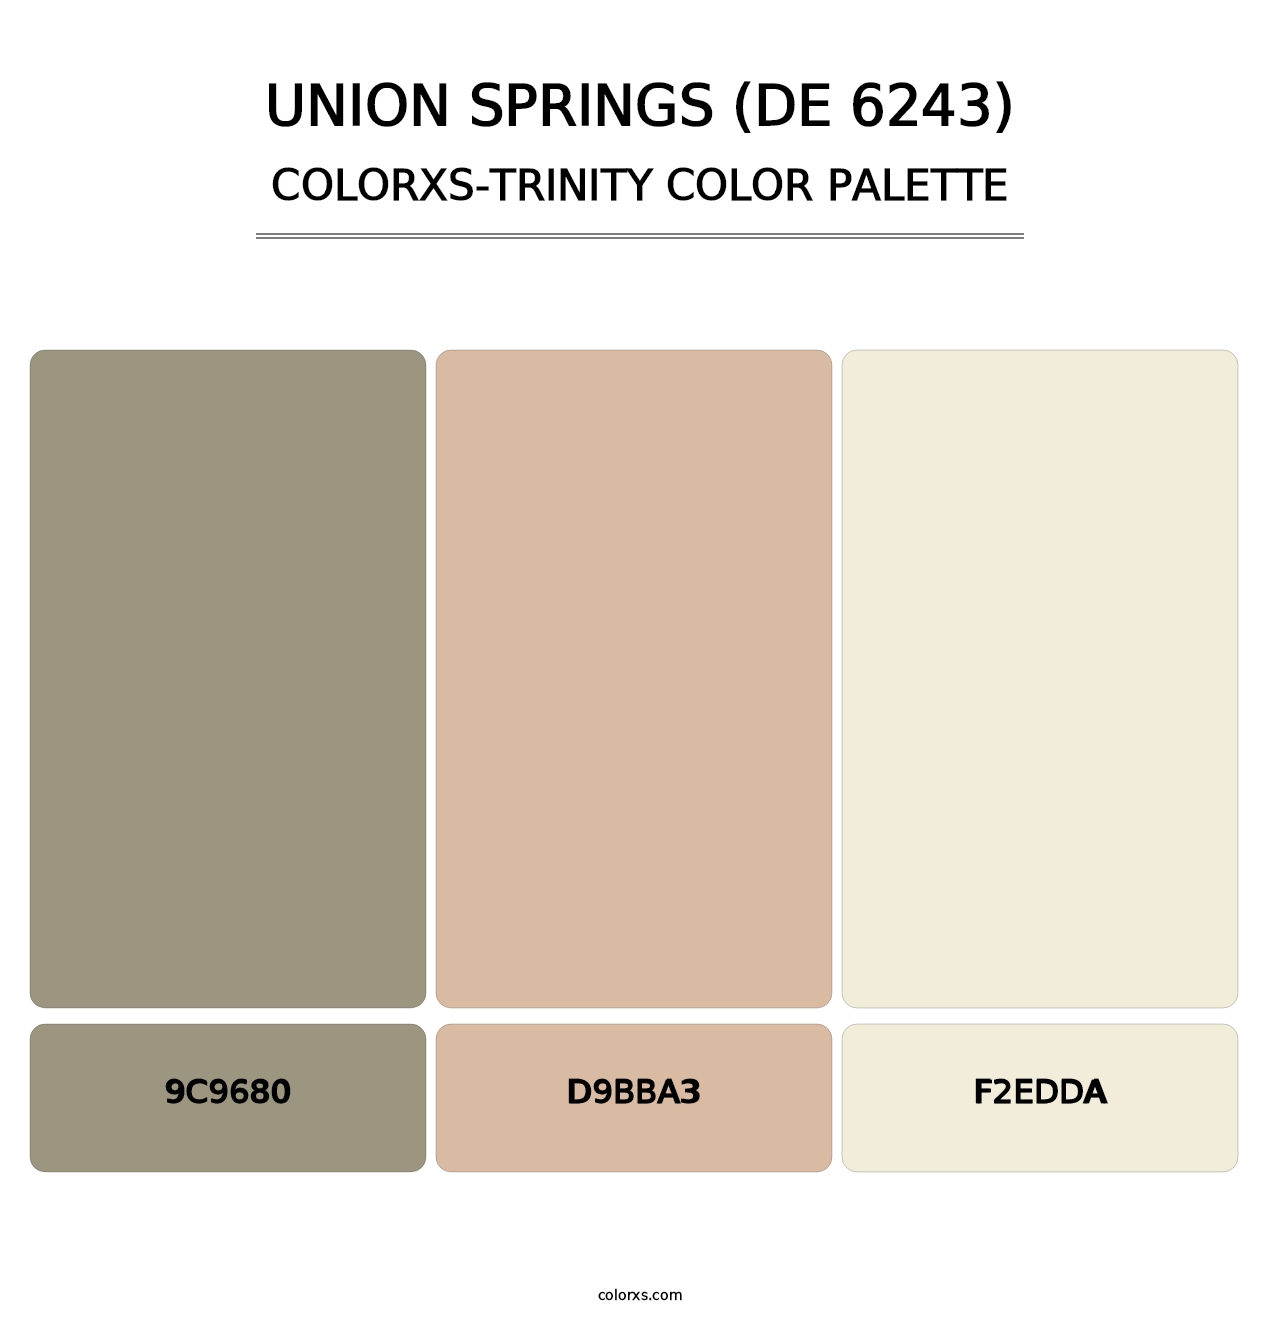 Union Springs (DE 6243) - Colorxs Trinity Palette